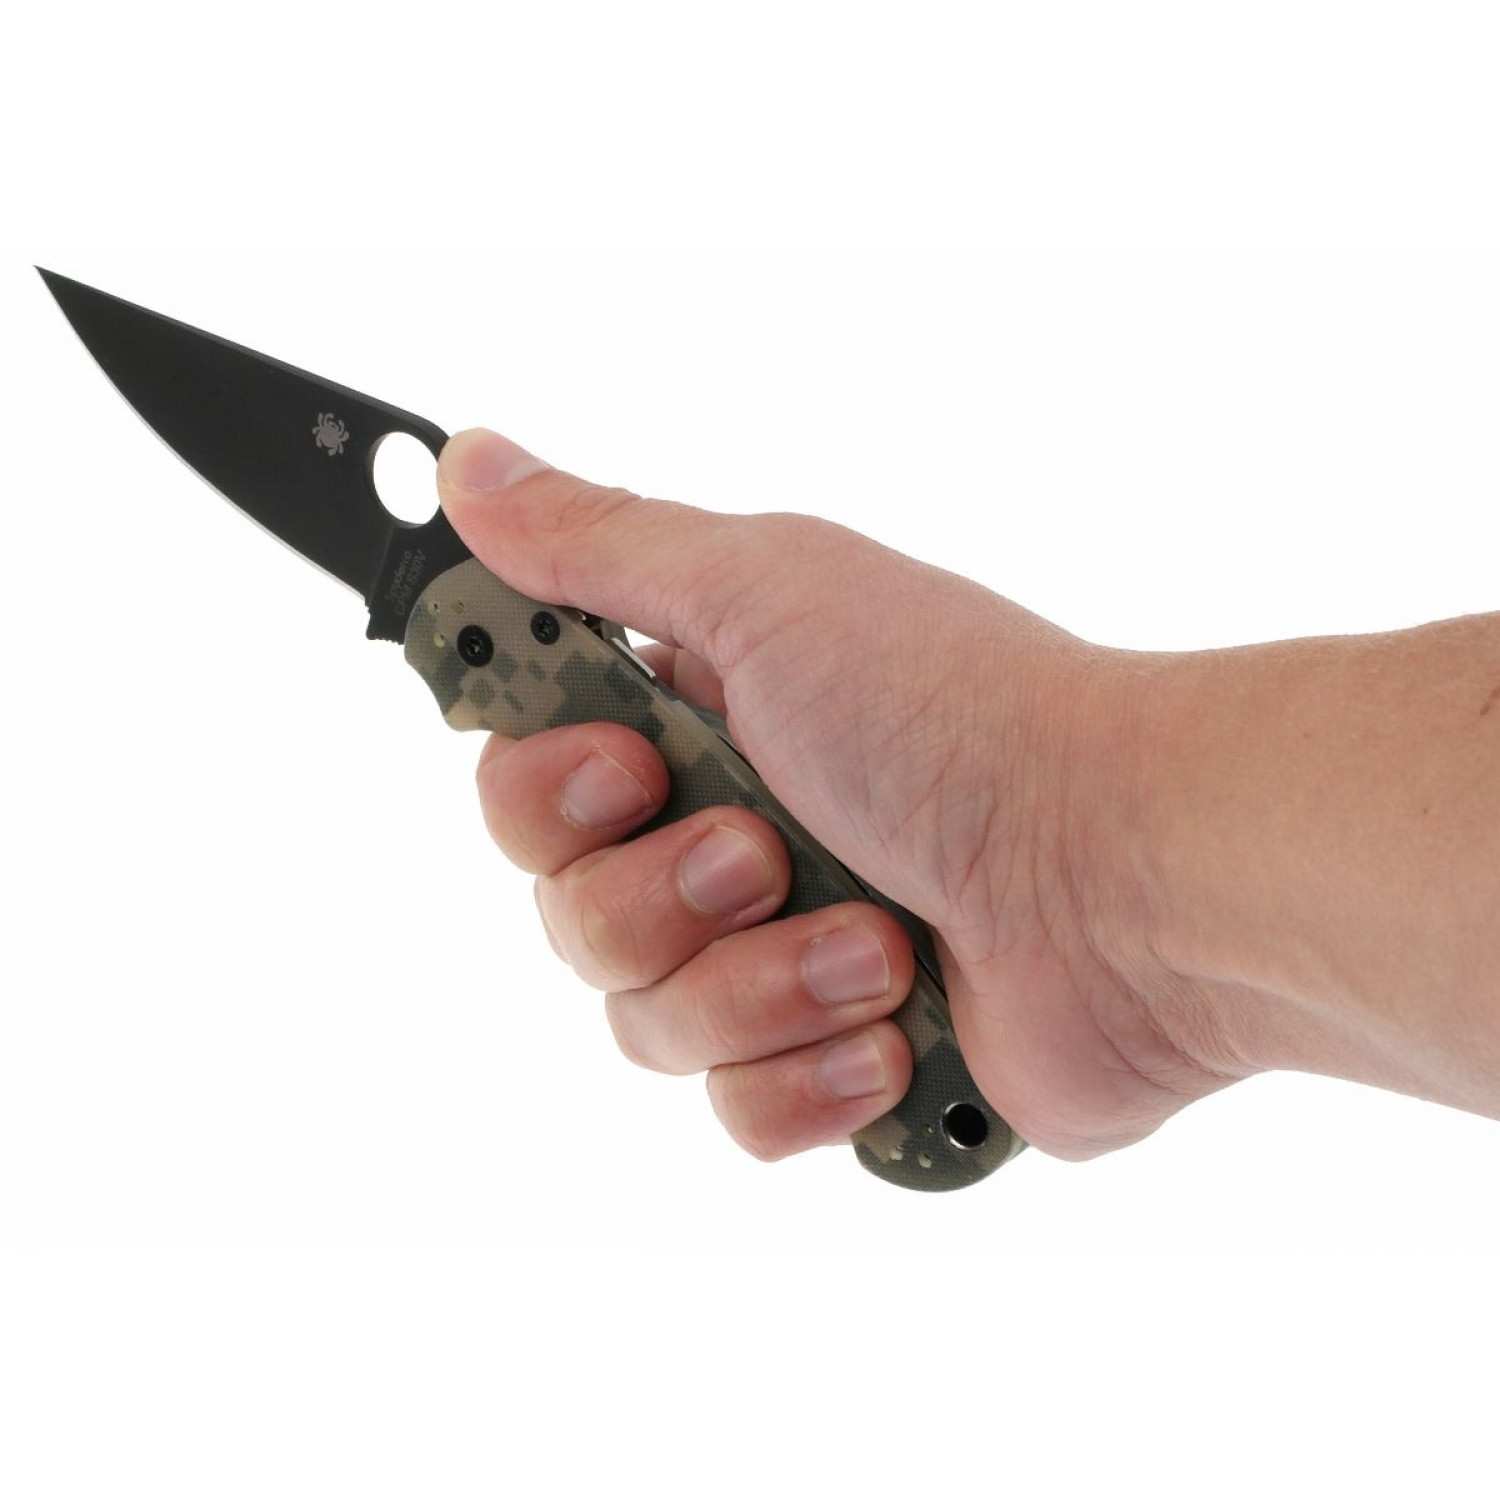 фото Нож складной para military 2 black - spyderco c81gpcmobk2, сталь cpm® s30v™ black dlc coated plain, рукоять стеклотекстолит g10, цифровой камуфляж (digi camo)